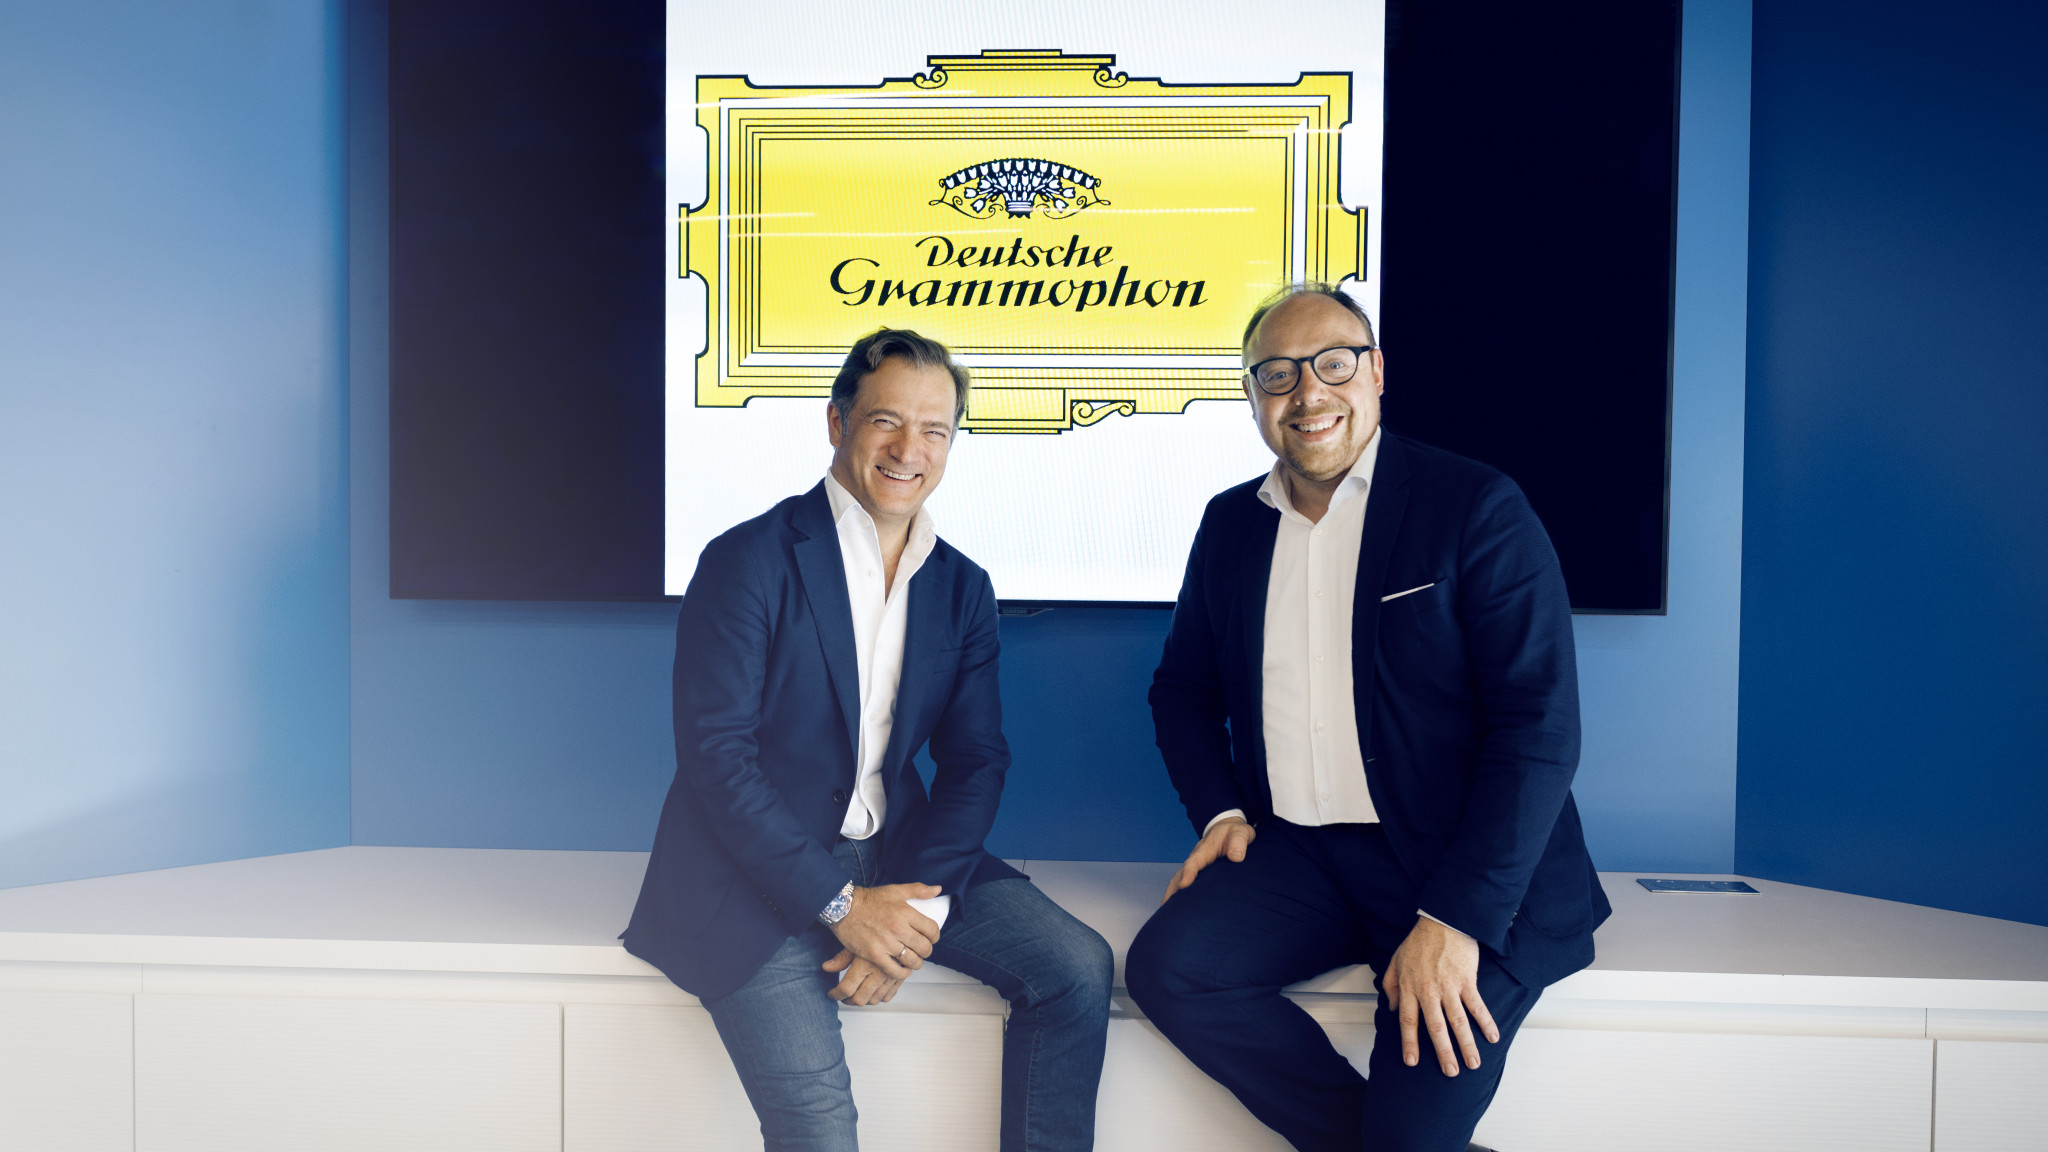 Renaud Capuçon and Deutsche Grammophon Seal an Innovative New Partnership Deal